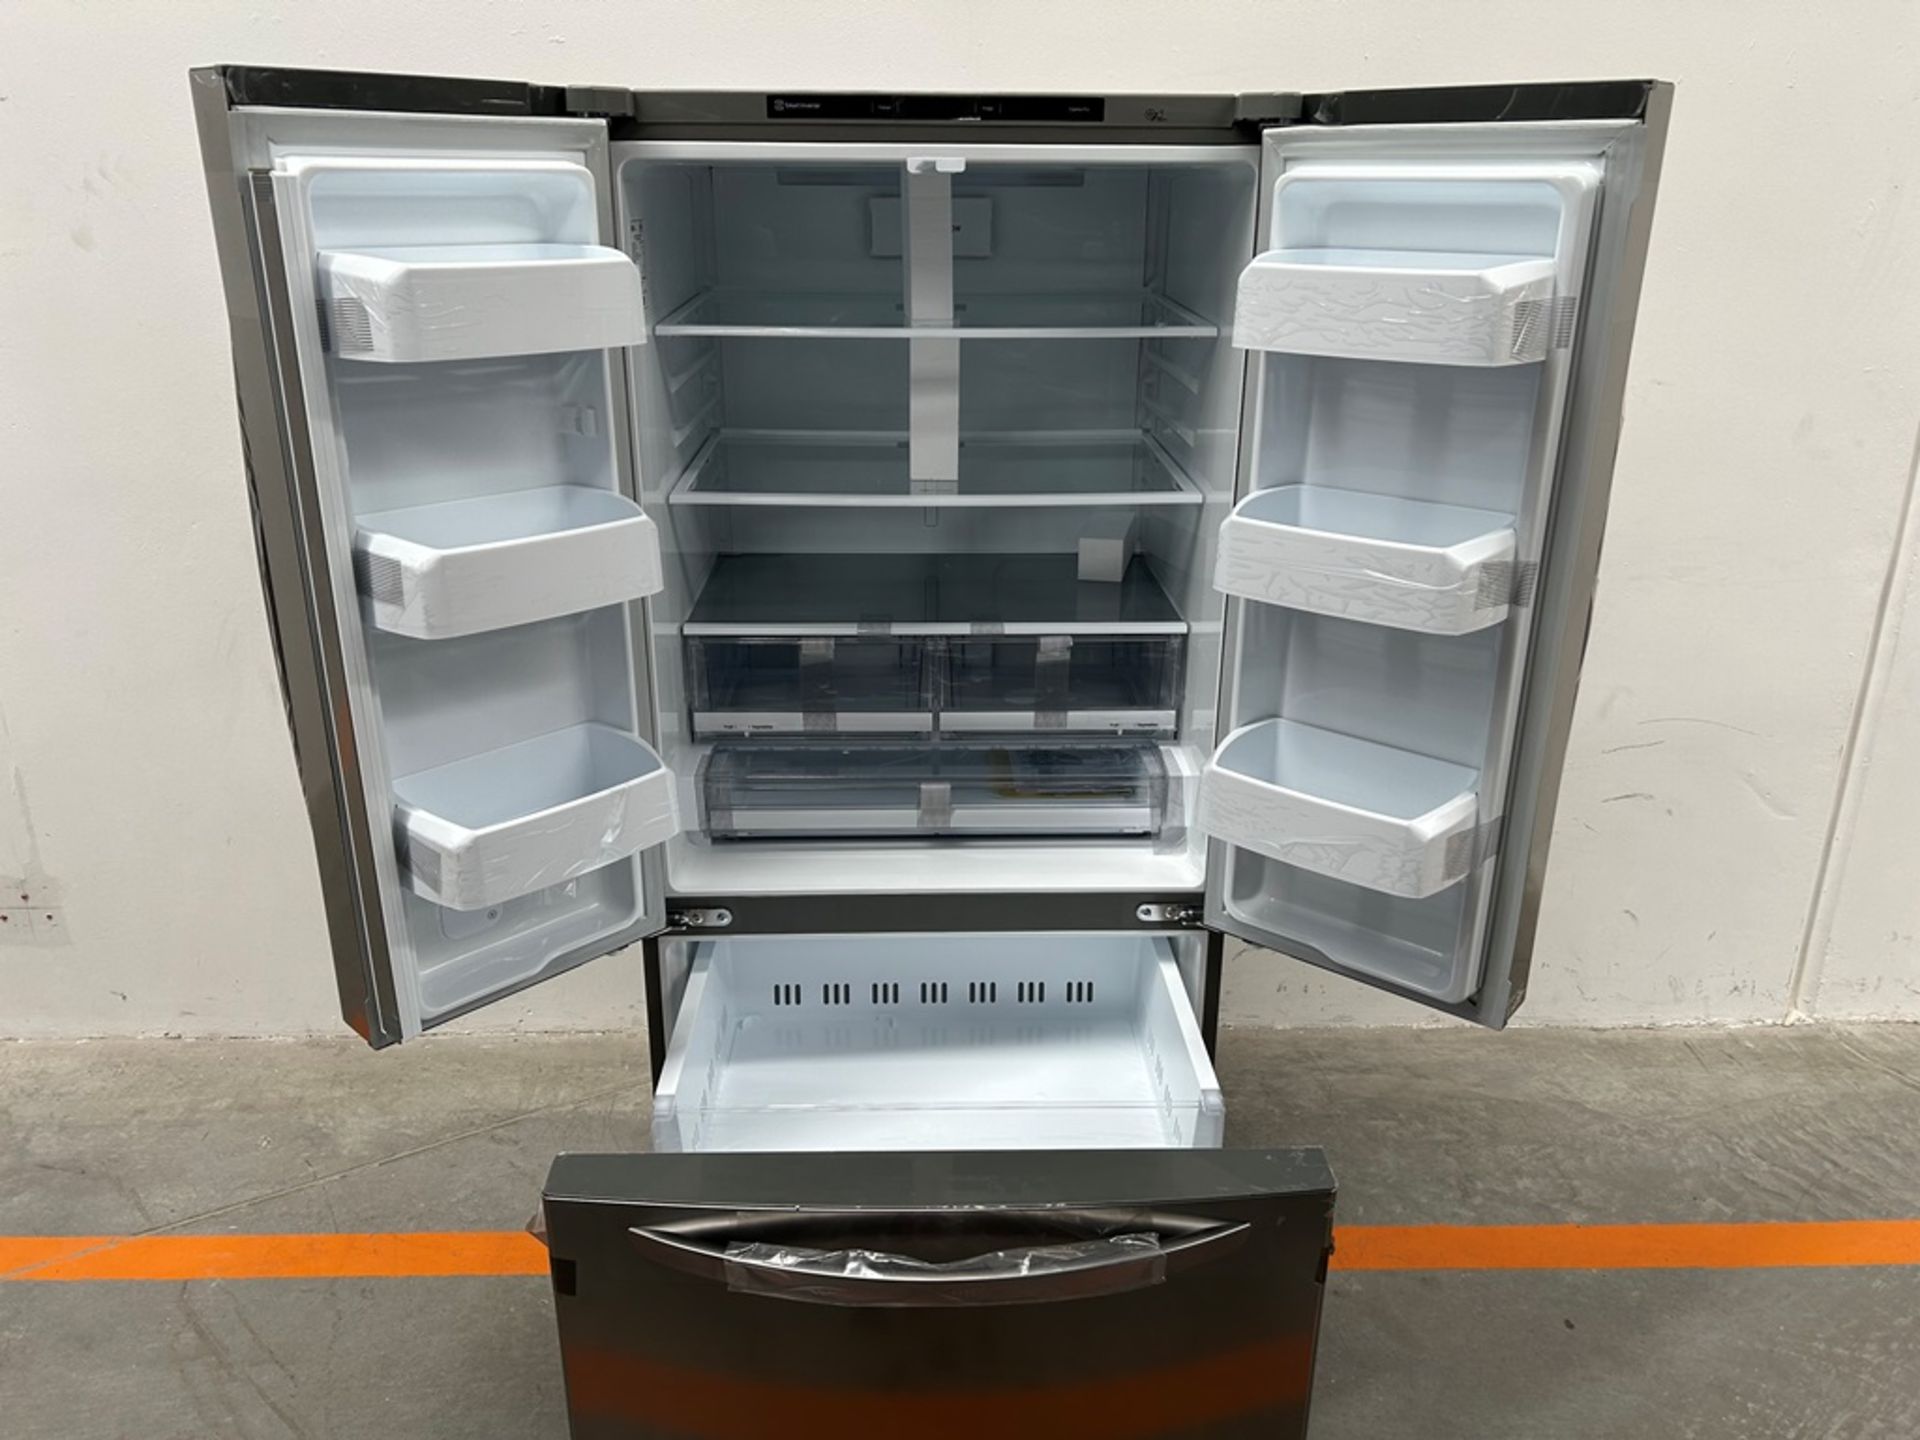 (NUEVO) Refrigerador Marca LG, Modelo GM65BGSK, Serie Z30098, Color GRIS - Image 4 of 11